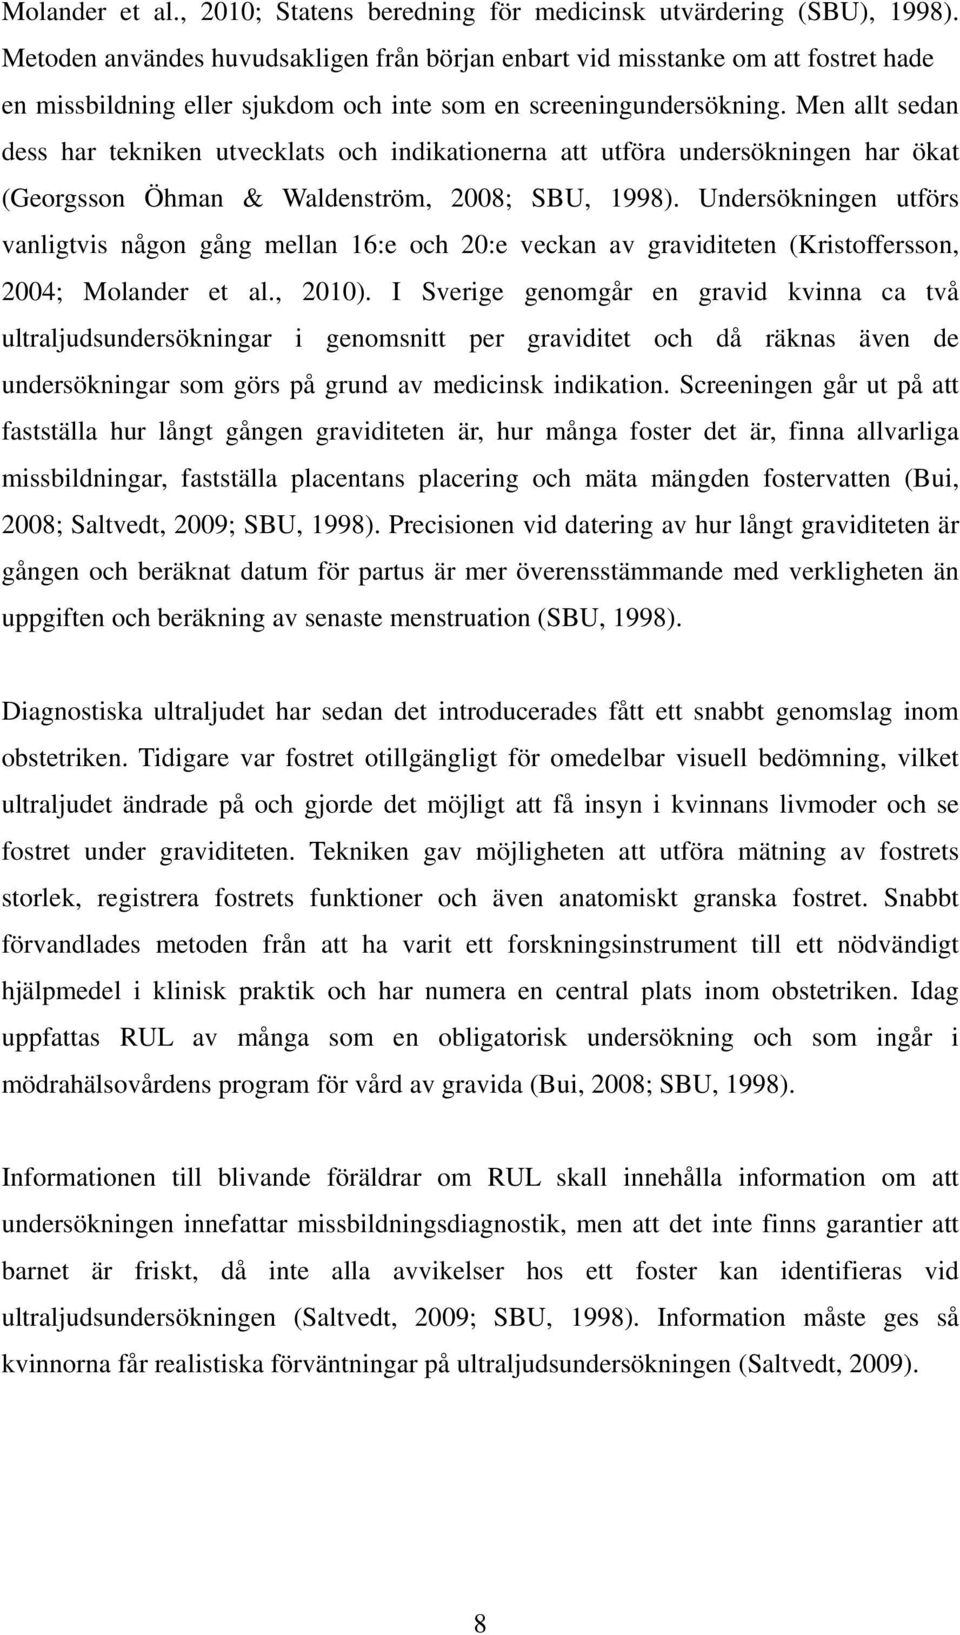 Men allt sedan dess har tekniken utvecklats och indikationerna att utföra undersökningen har ökat (Georgsson Öhman & Waldenström, 2008; SBU, 1998).